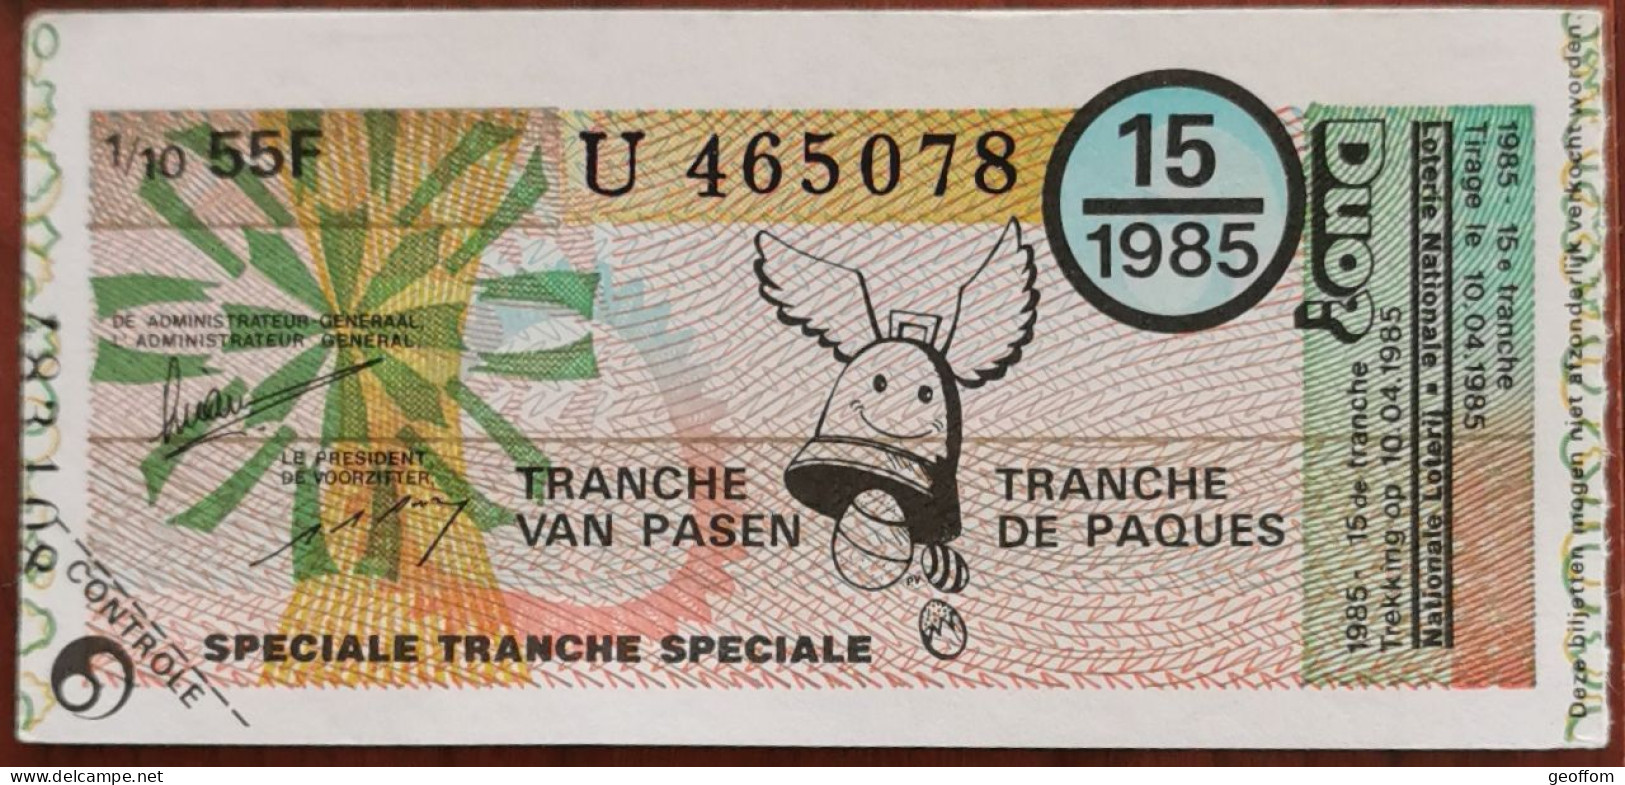 Billet De Loterie Nationale Belgique 1985 15e Tranche Spéciale De Pâques - 10-4-1985 - Billetes De Lotería